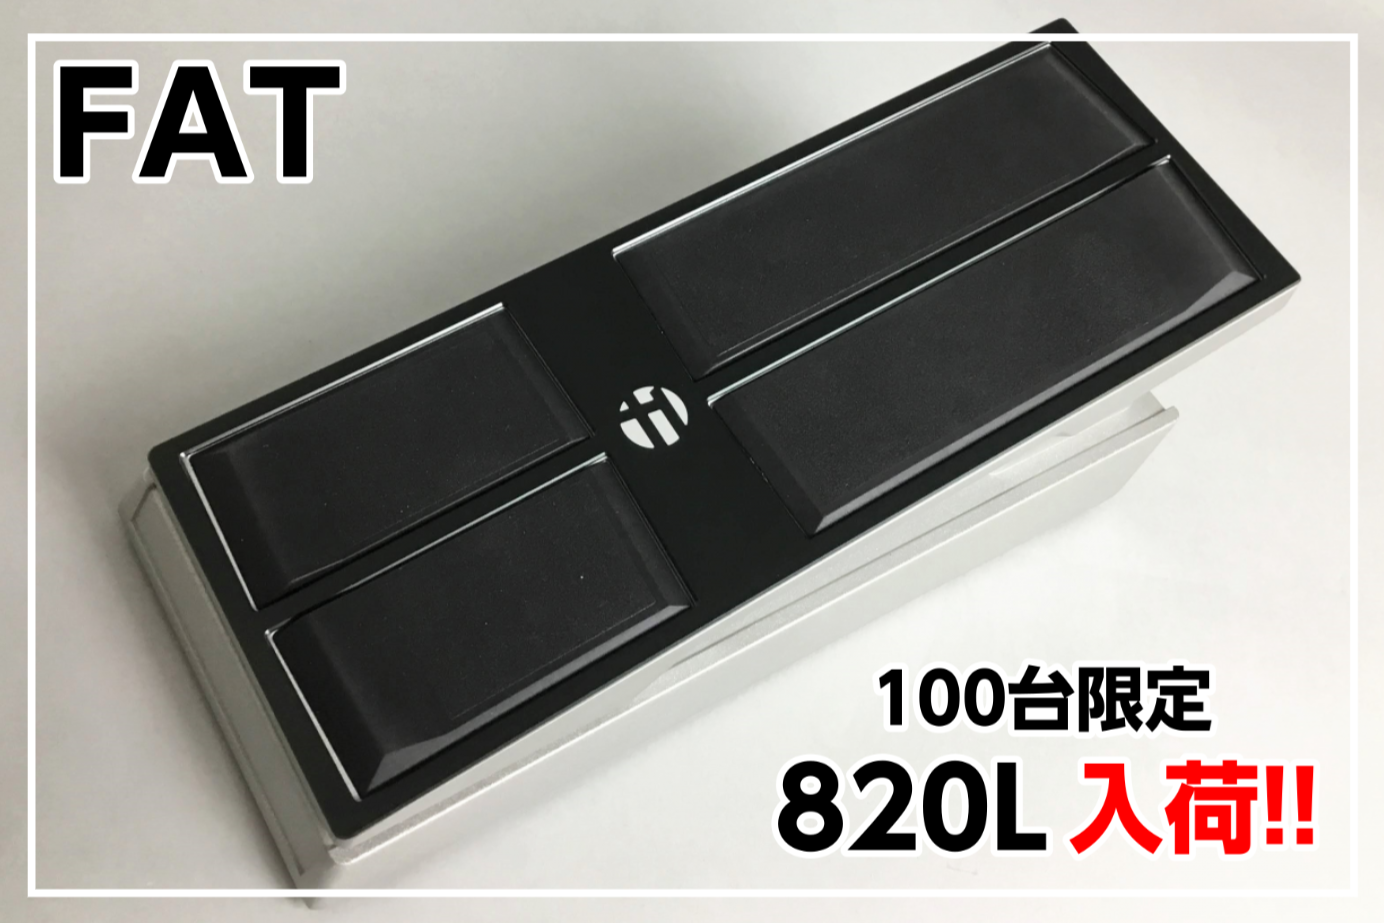 【100台限定モデル】FAT 820L -ボリュームペダル-2台入荷!!